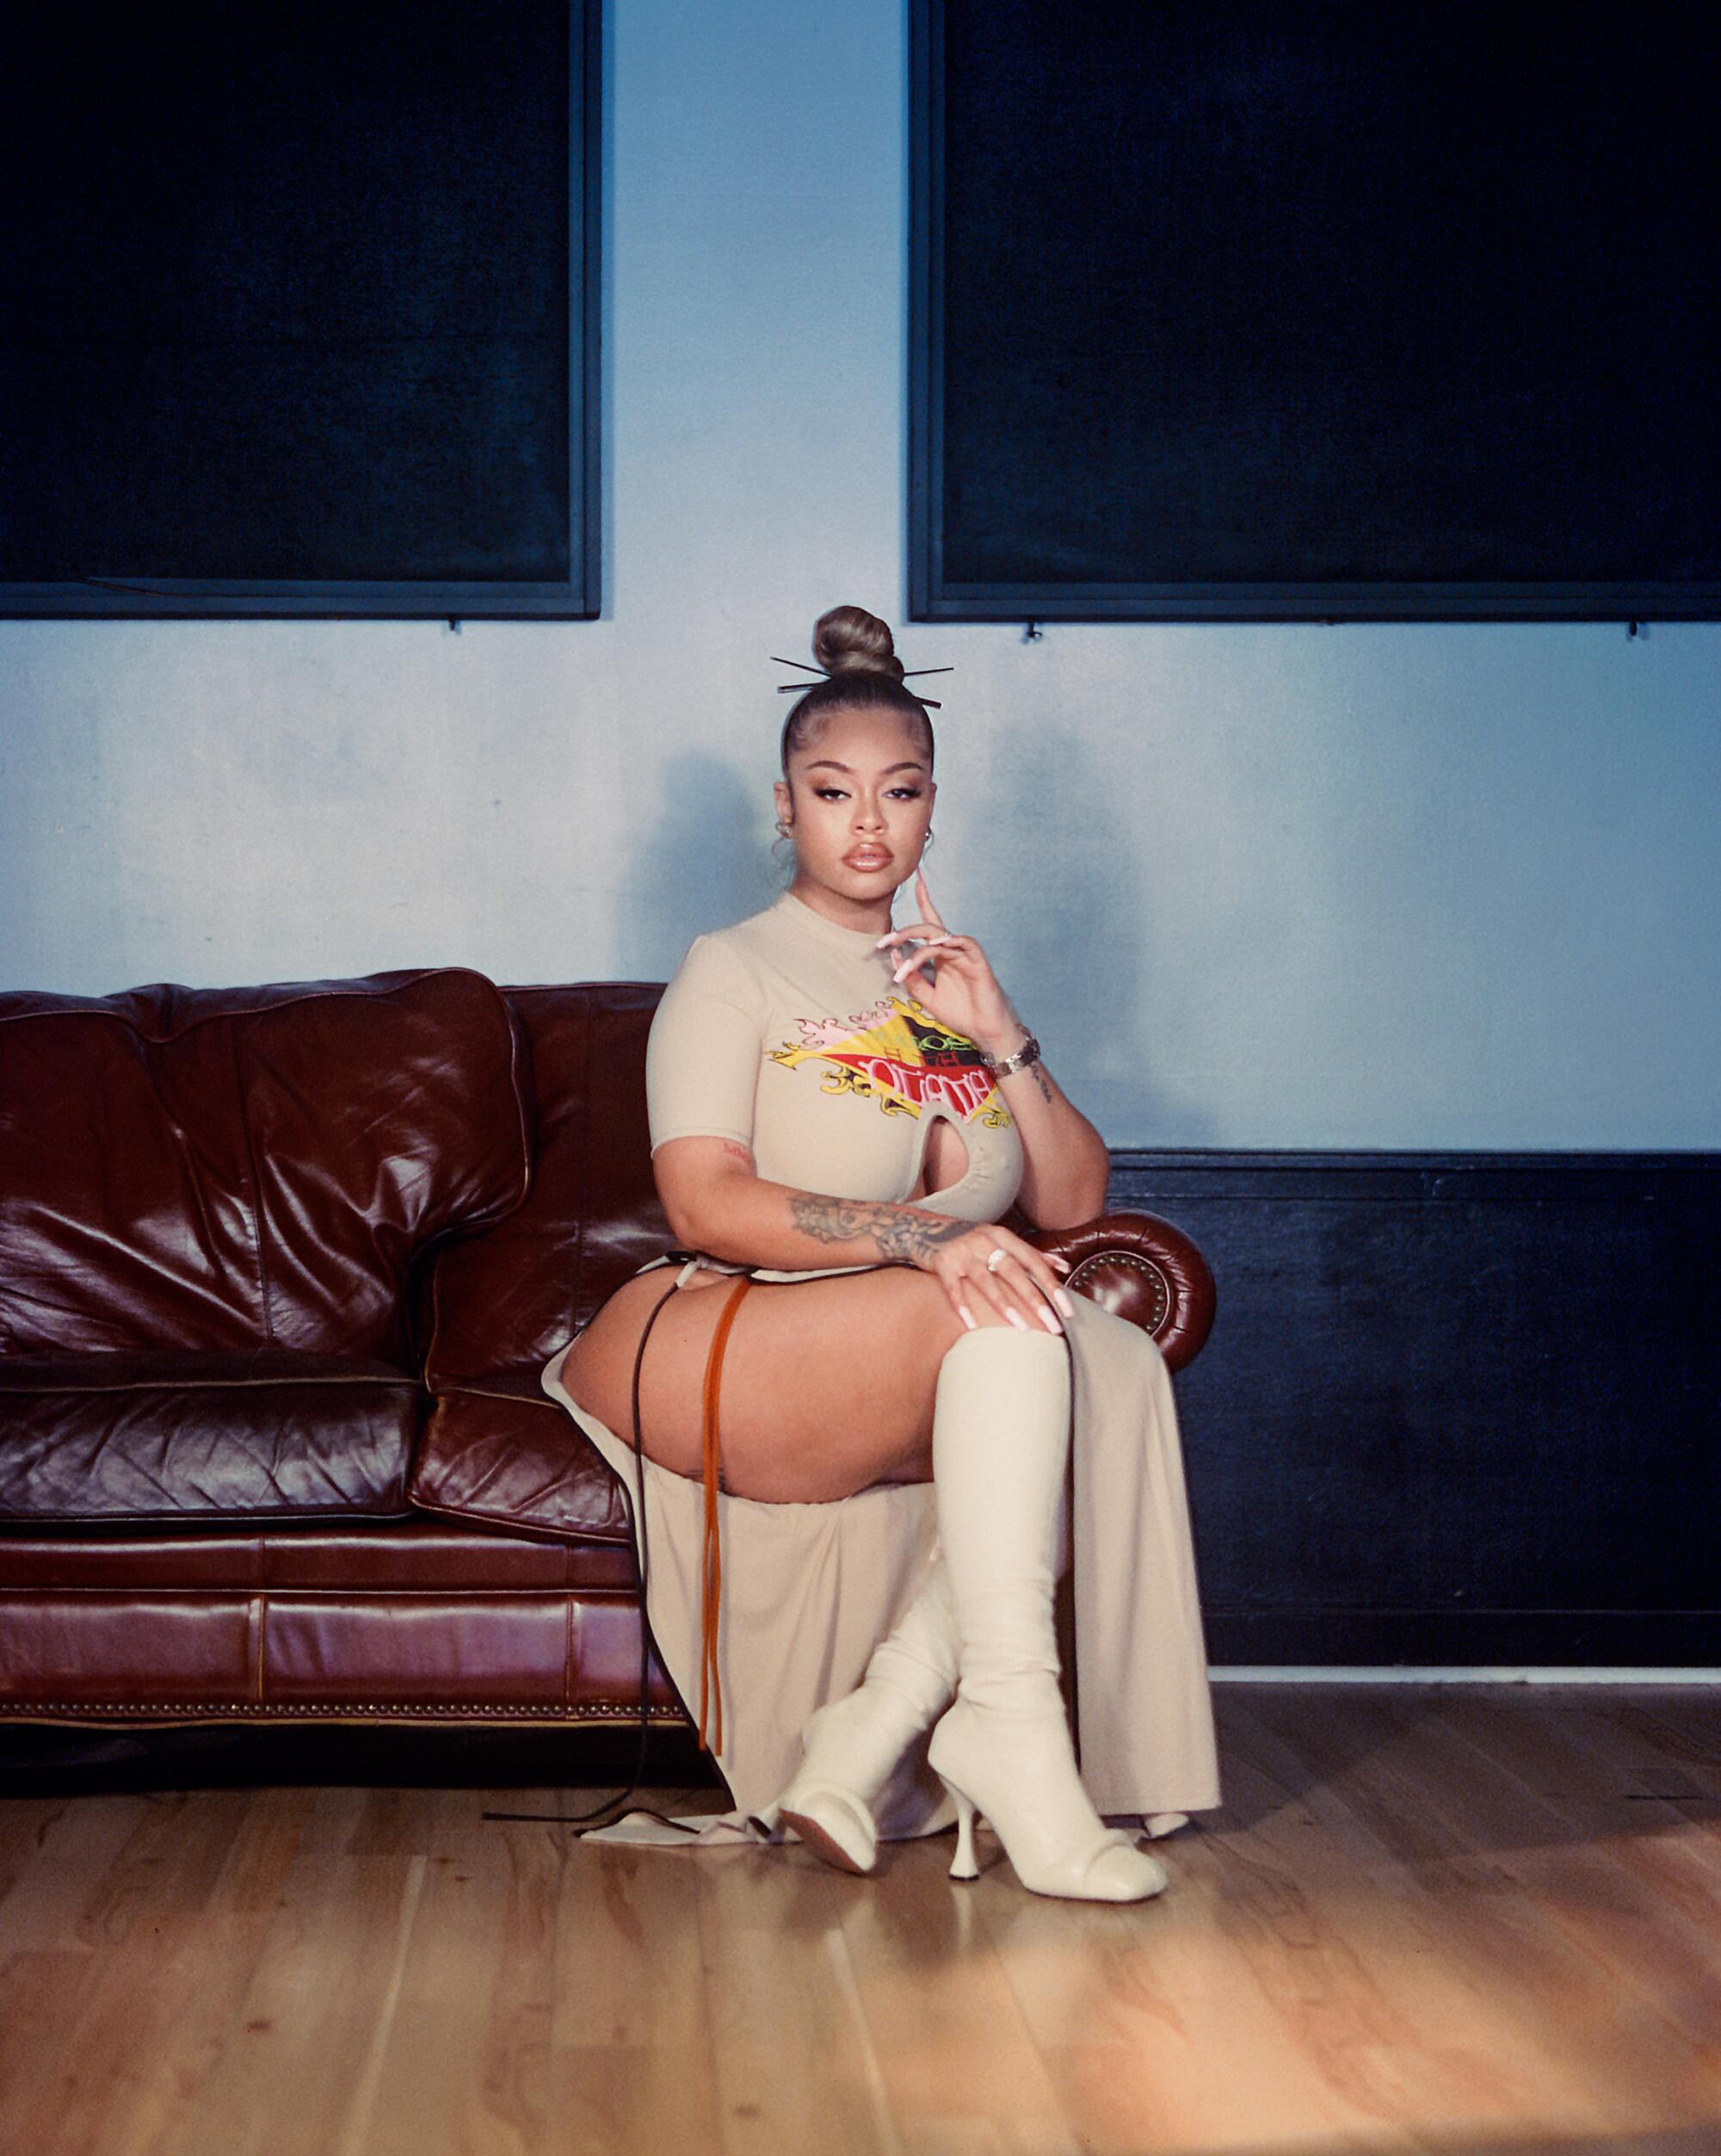 A female rapper sits on a burgundy sofa